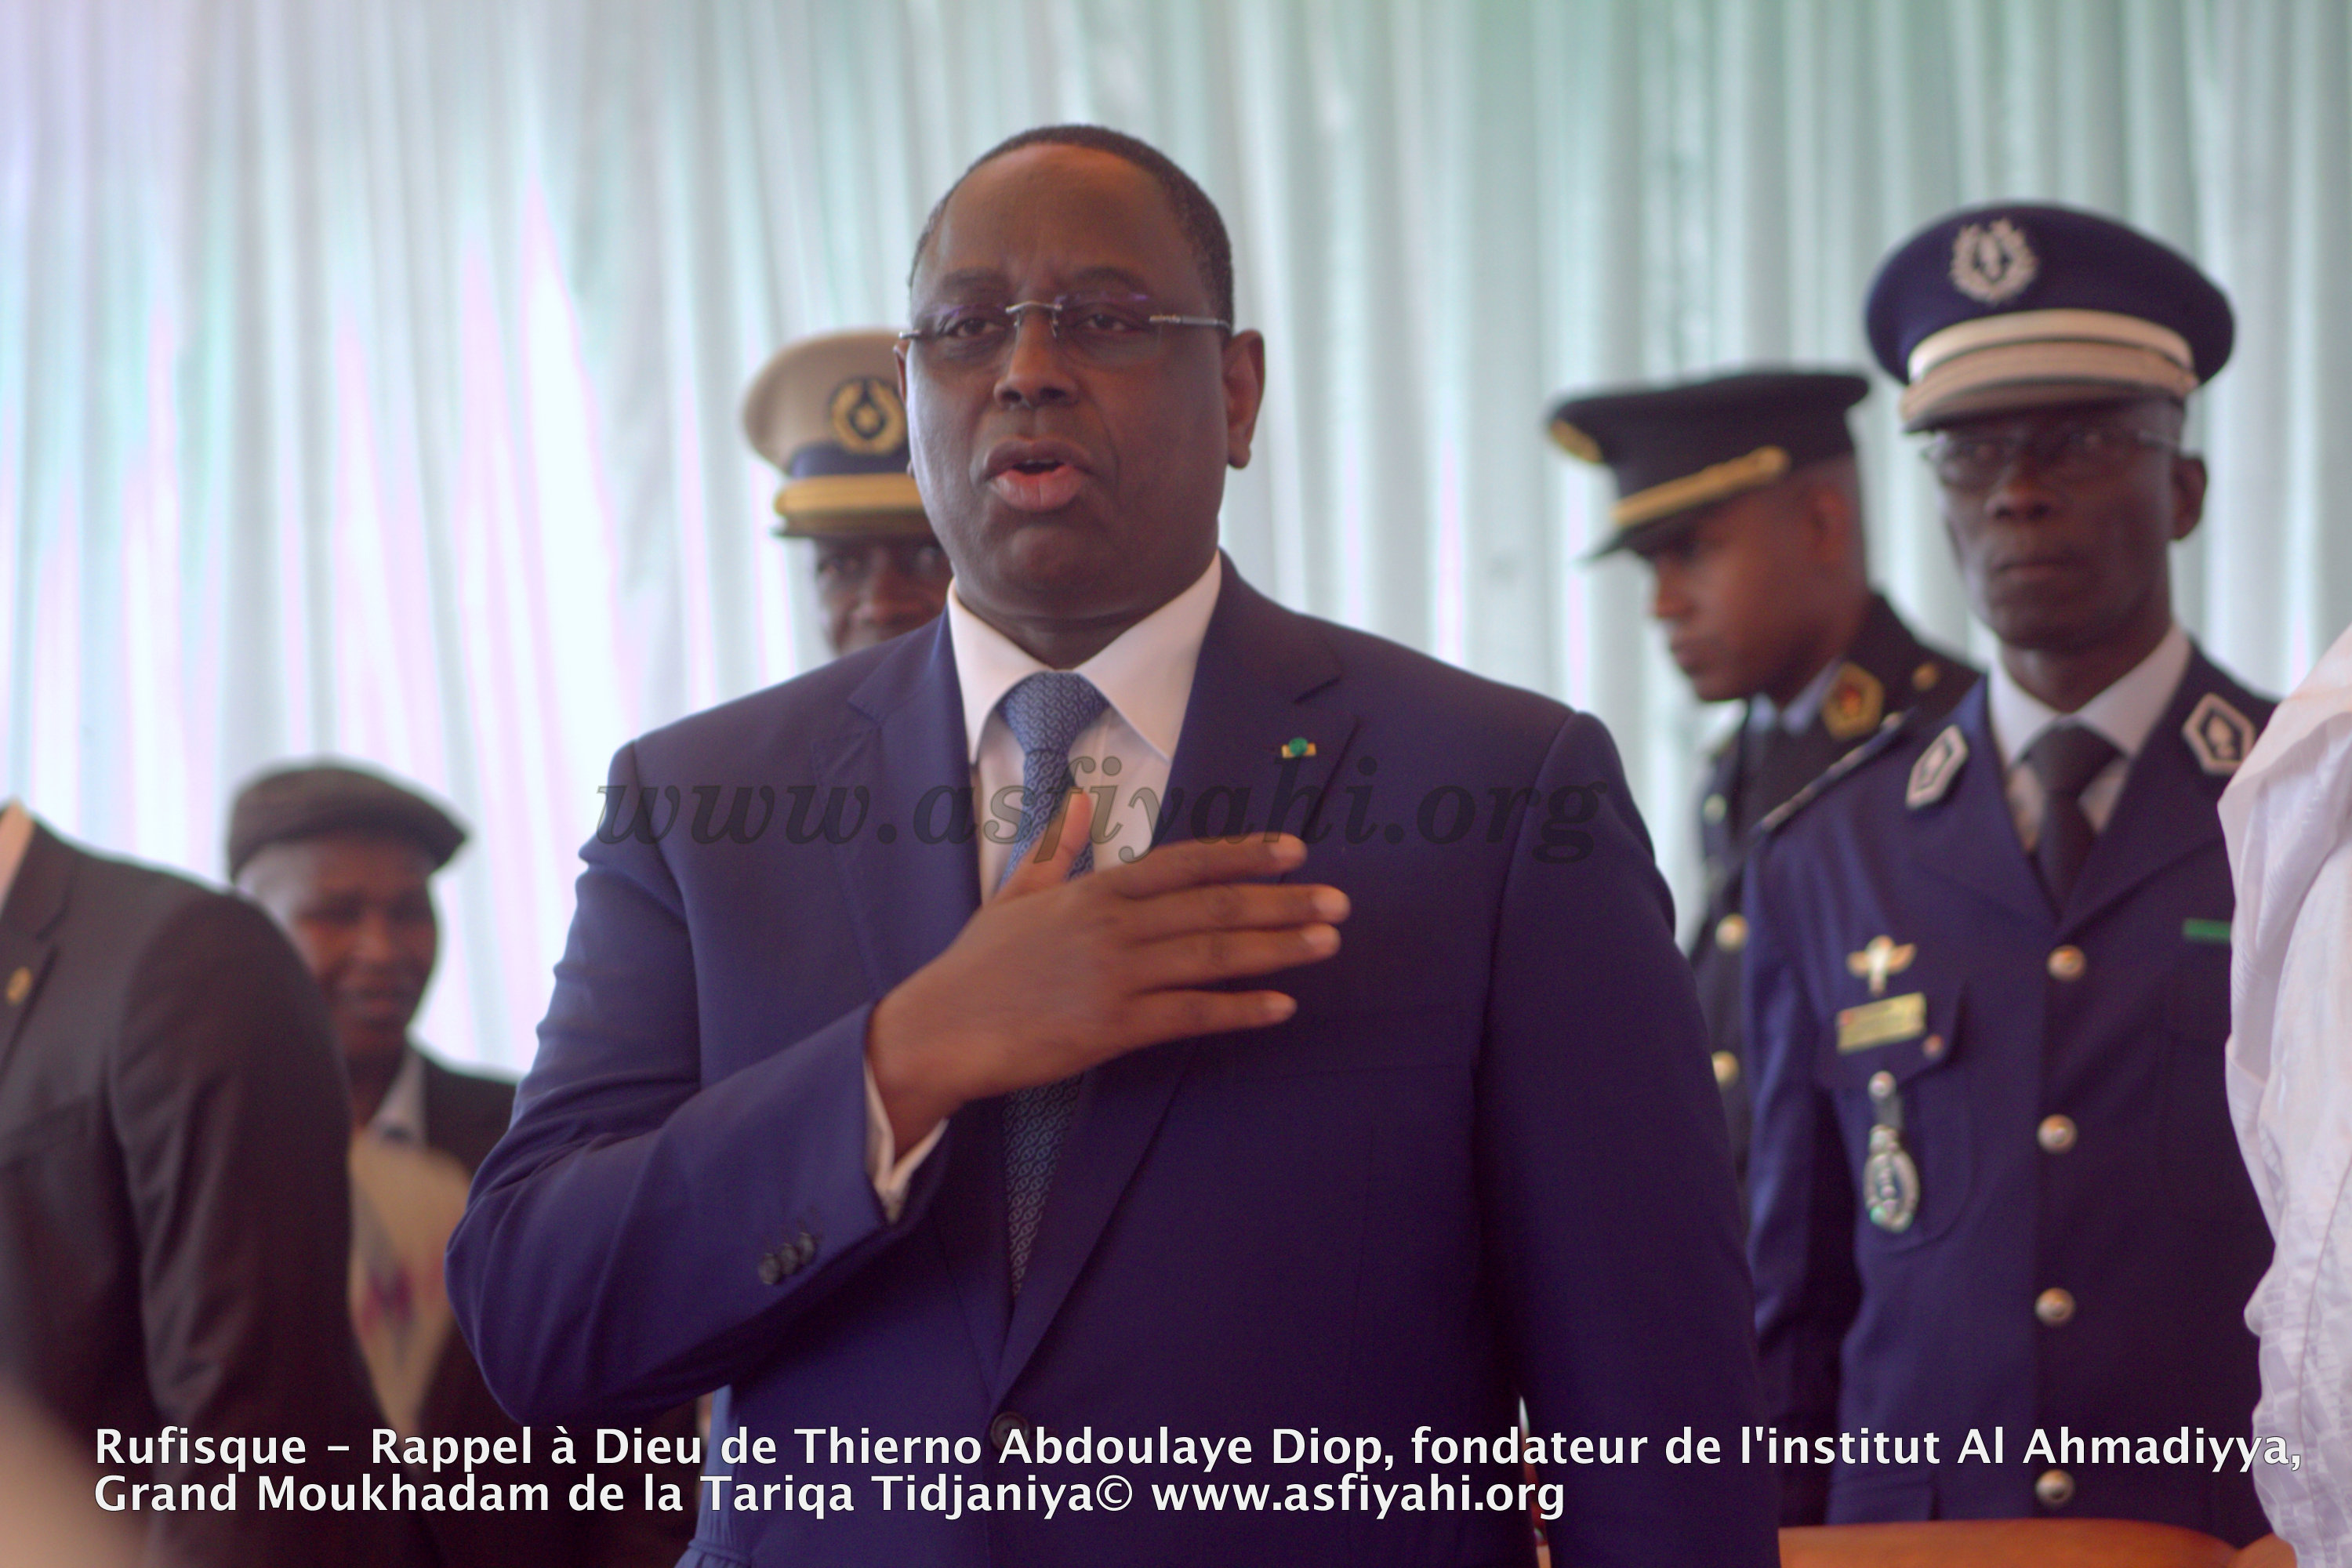 PHOTOS - Les images de la présentation de Condoléances du President Macky Sall chez Thierno Abdoulaye Diop, fondateur de l'institut Al Ahmadiyya